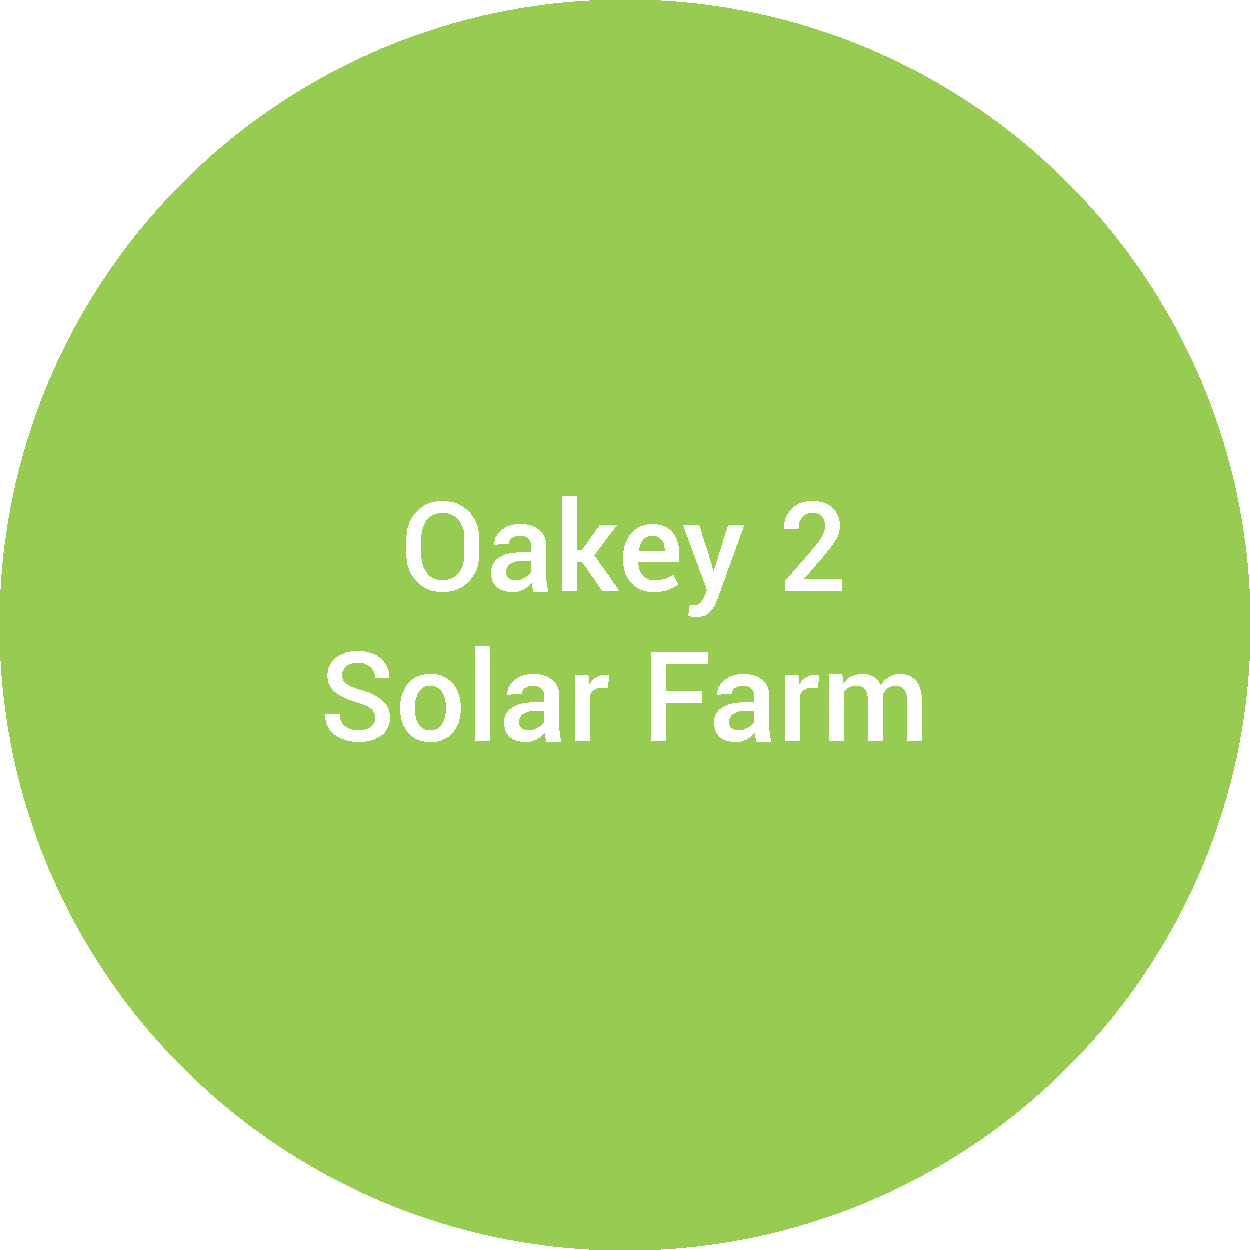 Oakey 2 Solar Farm